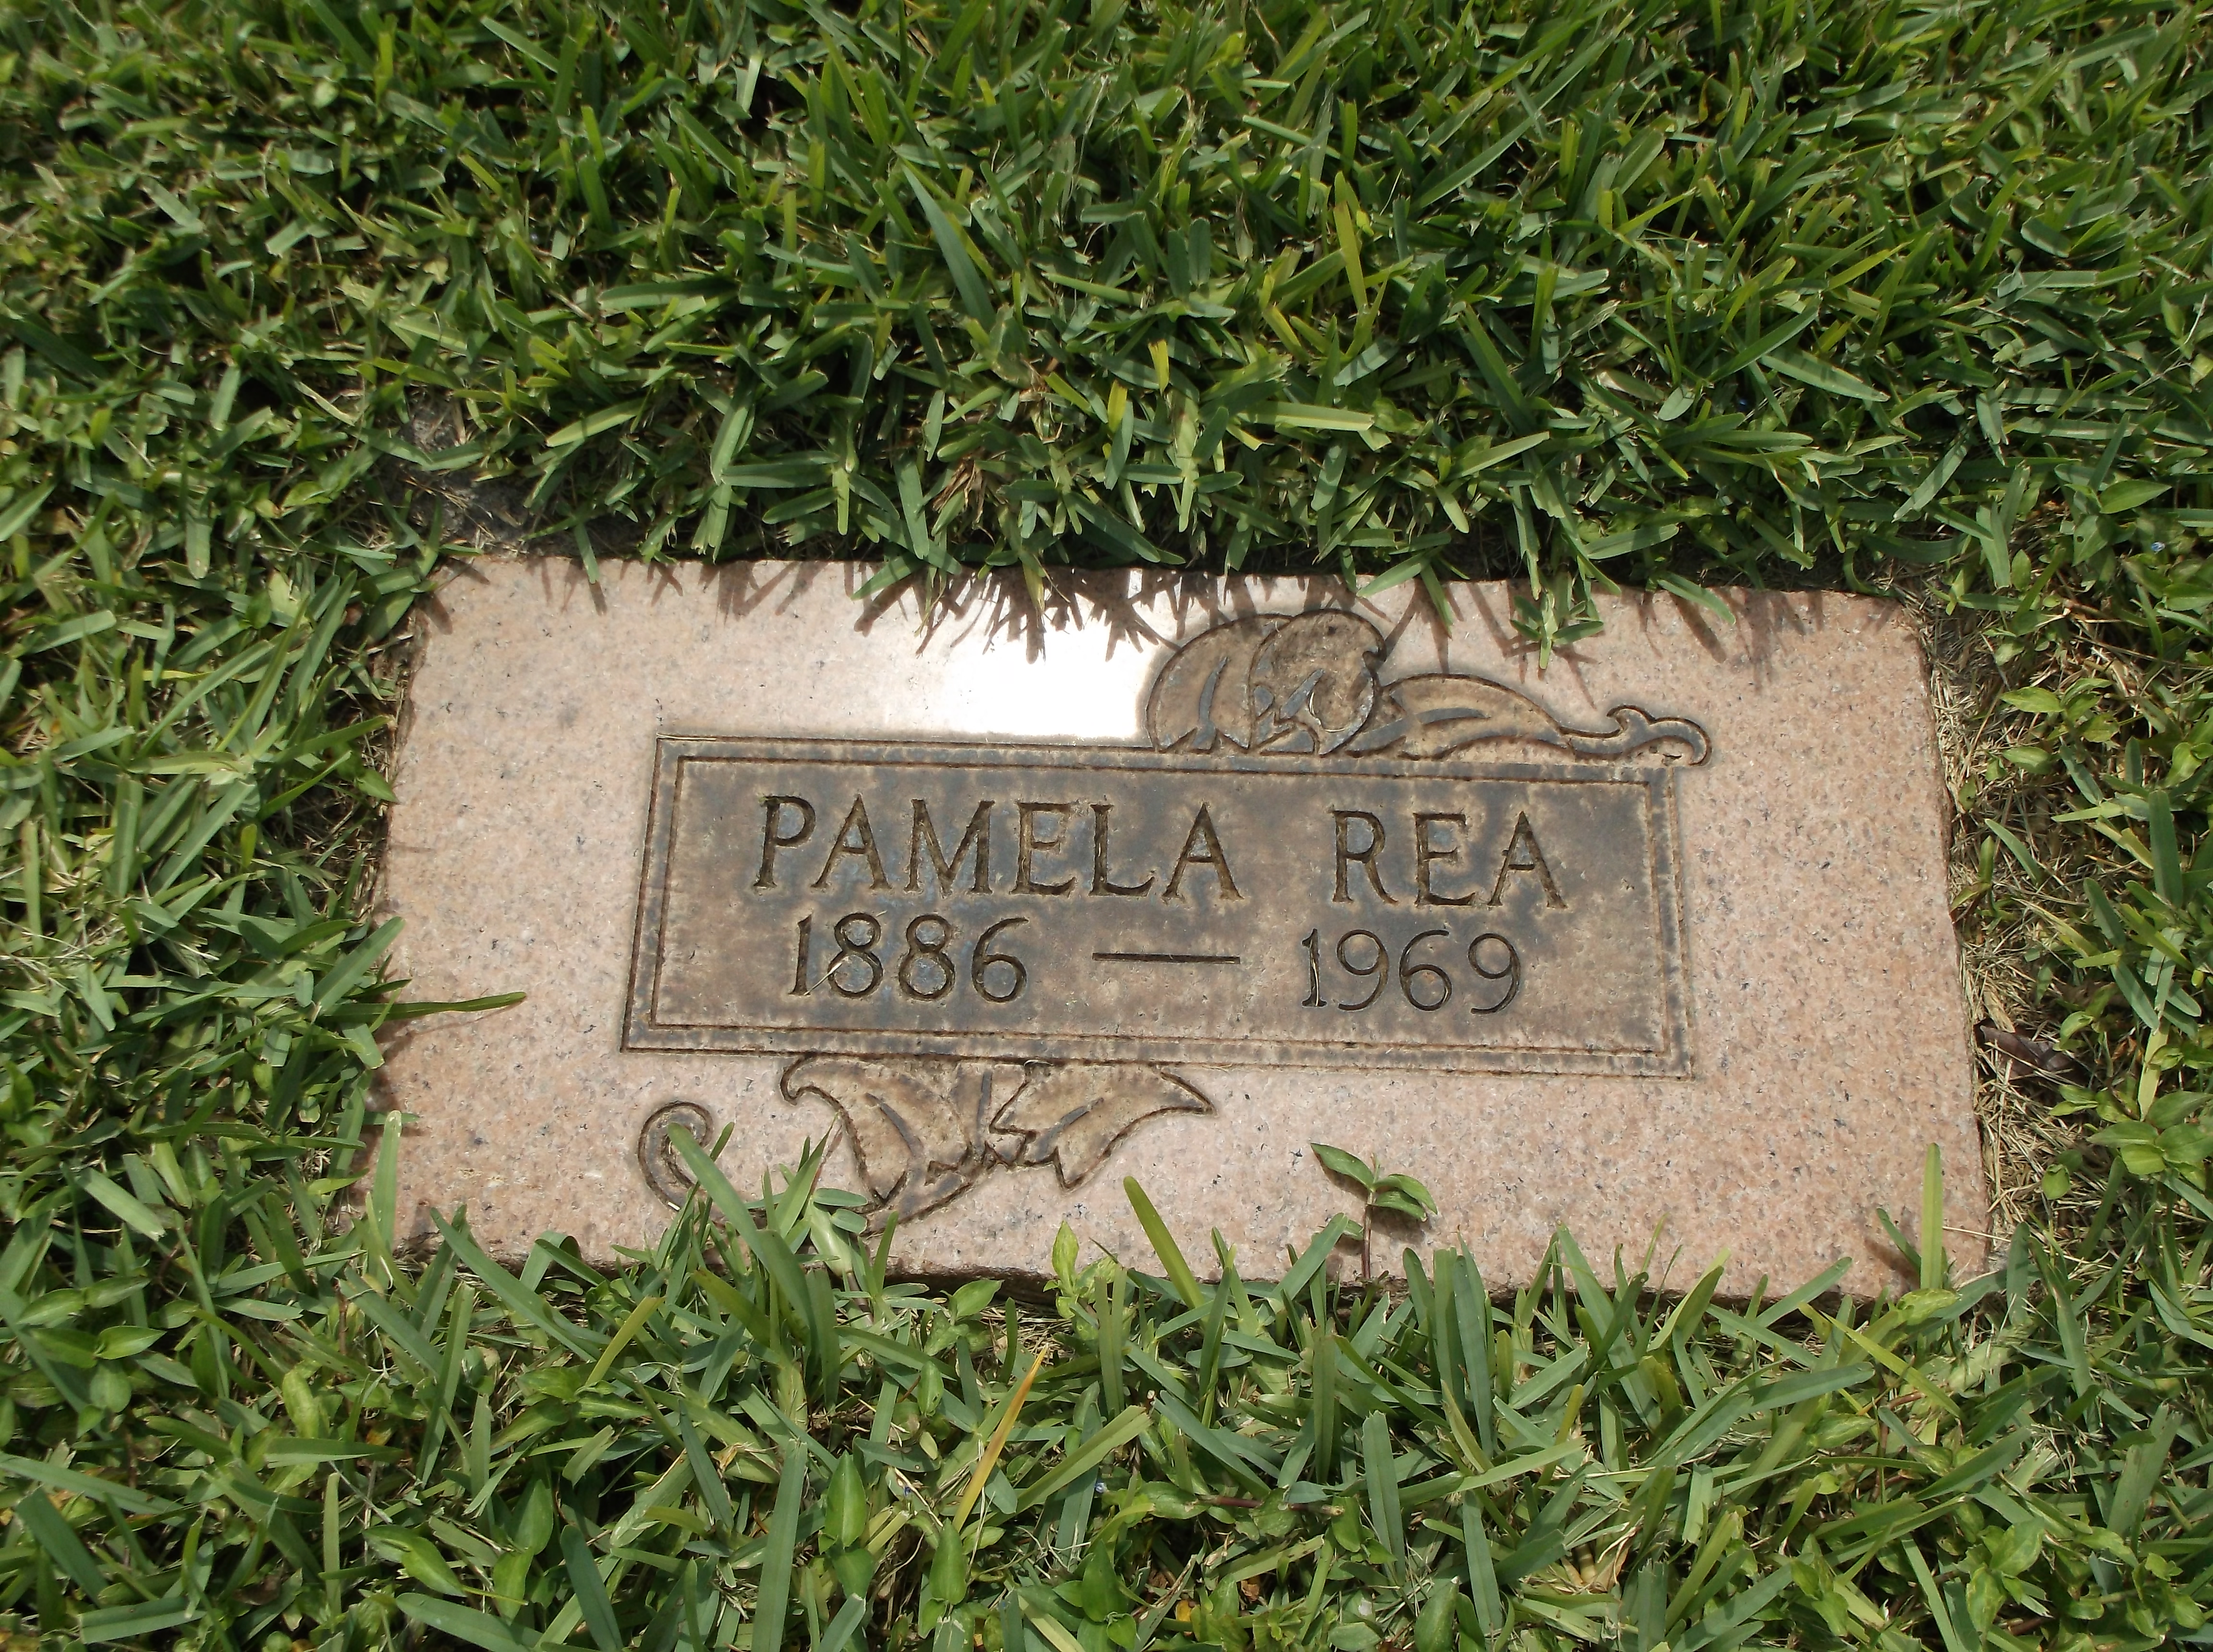 Pamela Rea